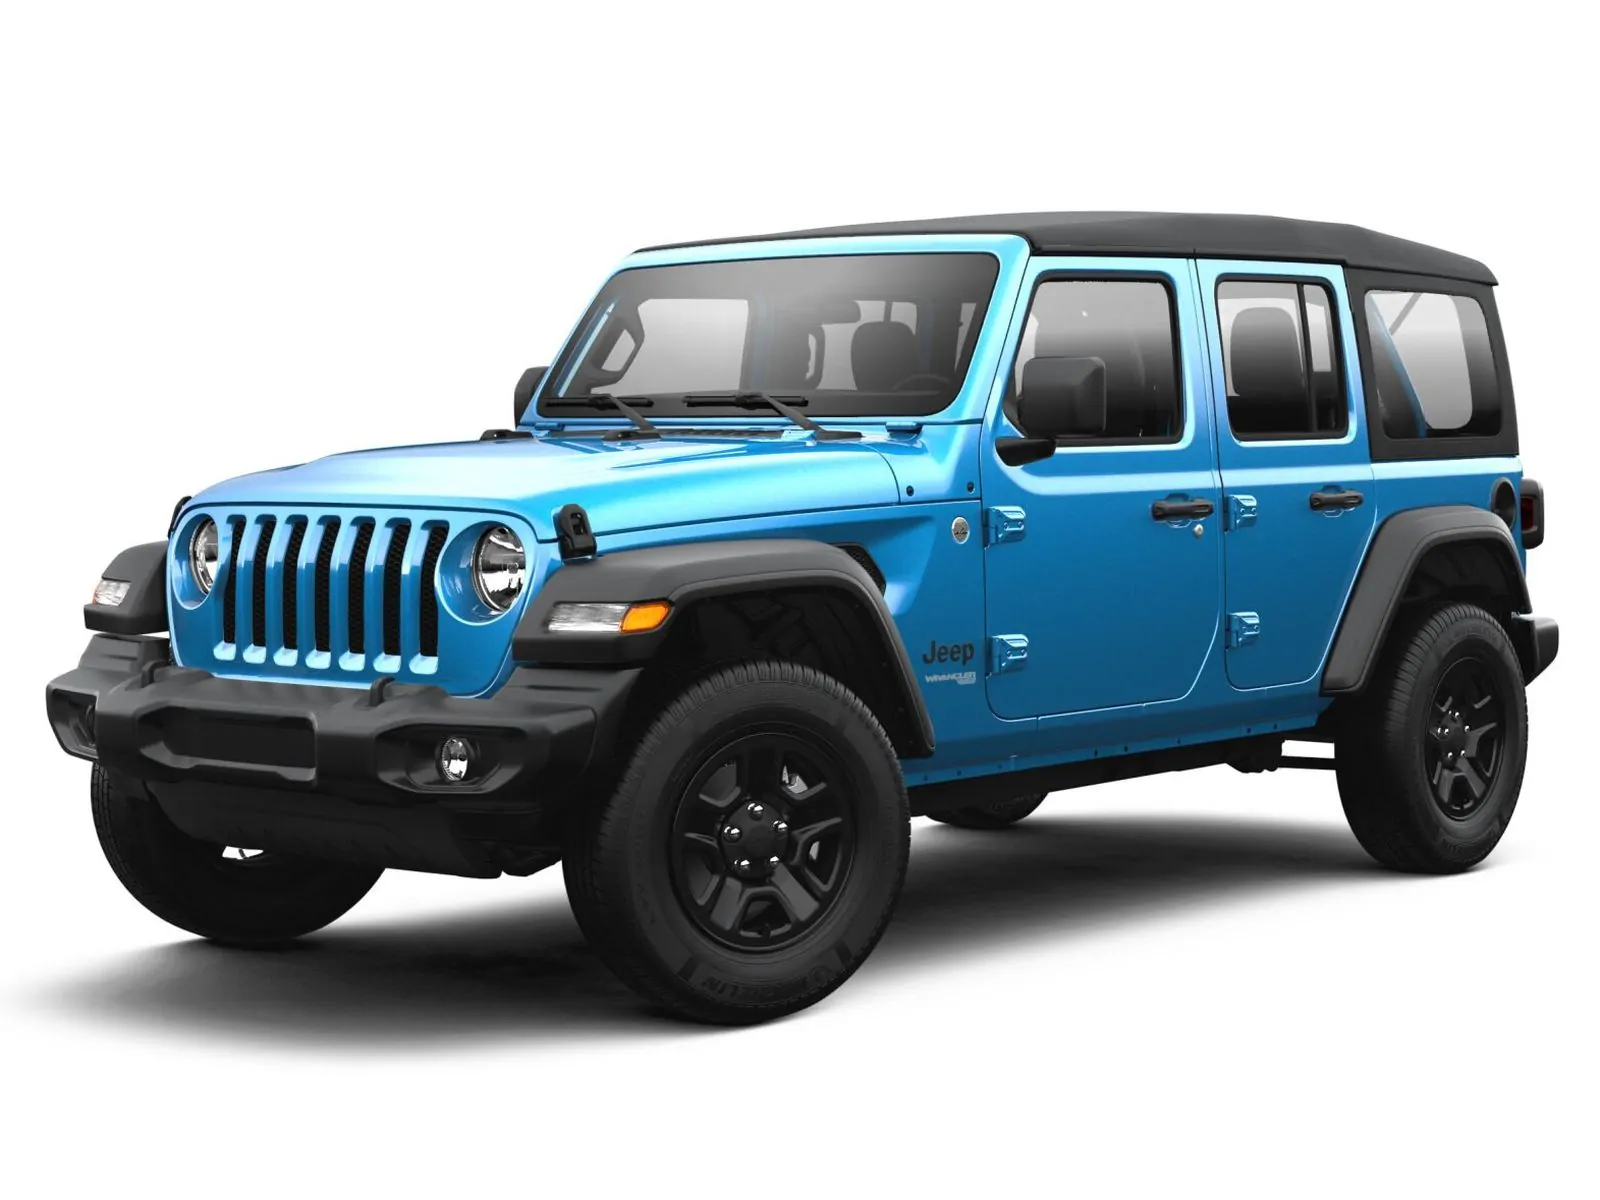 Koji su najbolje korišteni modeli Jeep Wrangler?